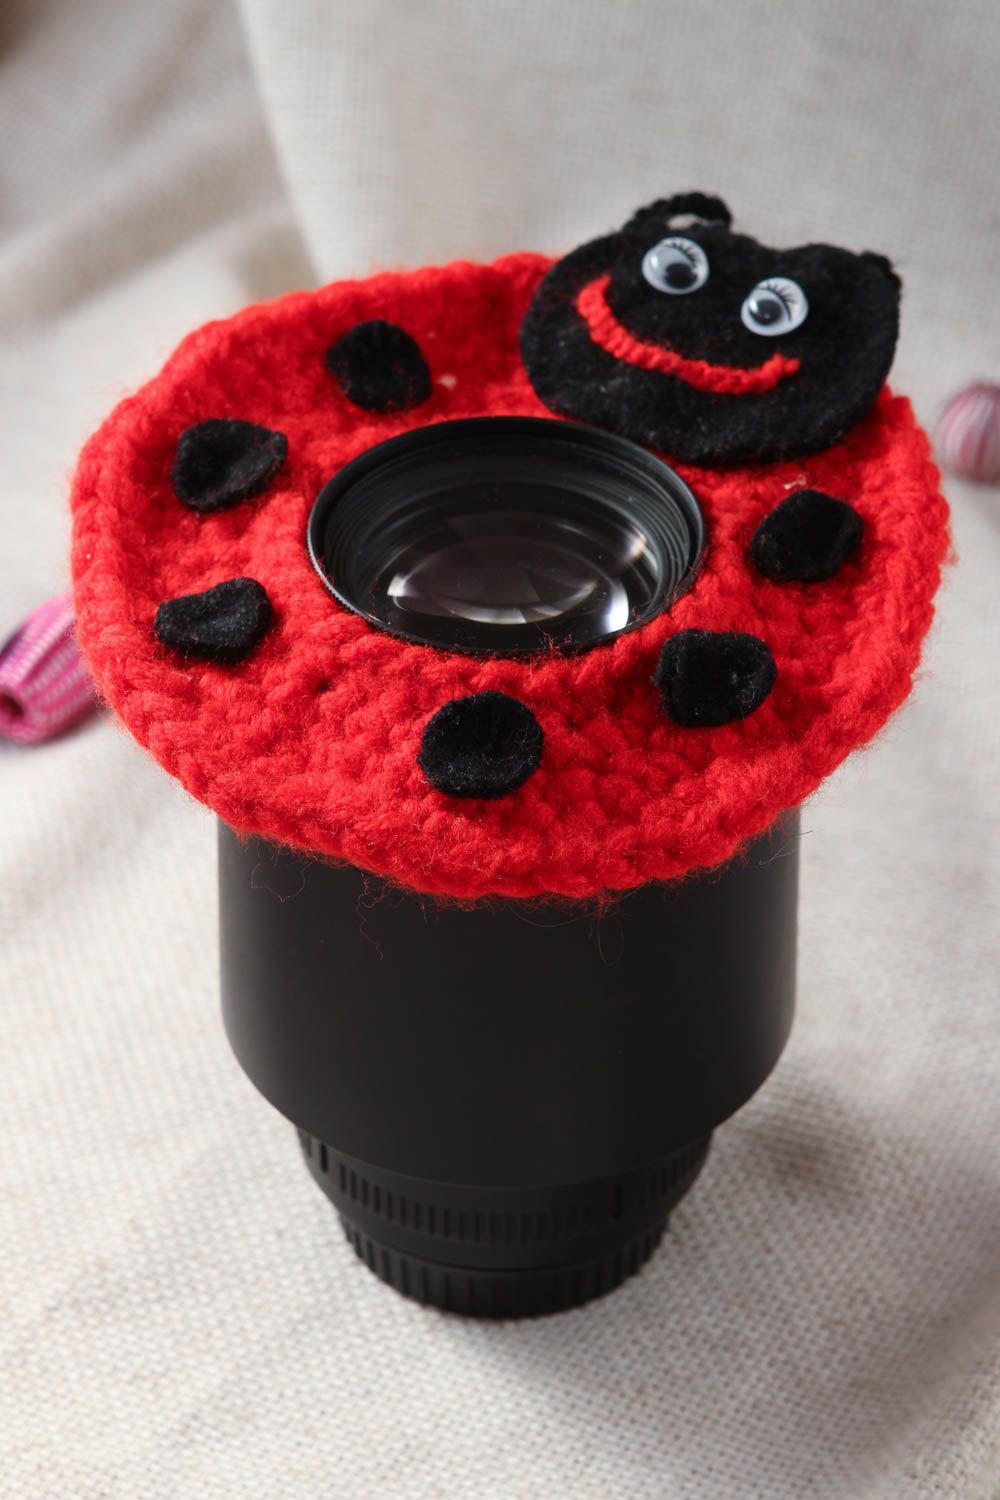 Игрушка на объектив фотоаппарата хендмейд игрушка крючком мягкая игрушка красная фото 1